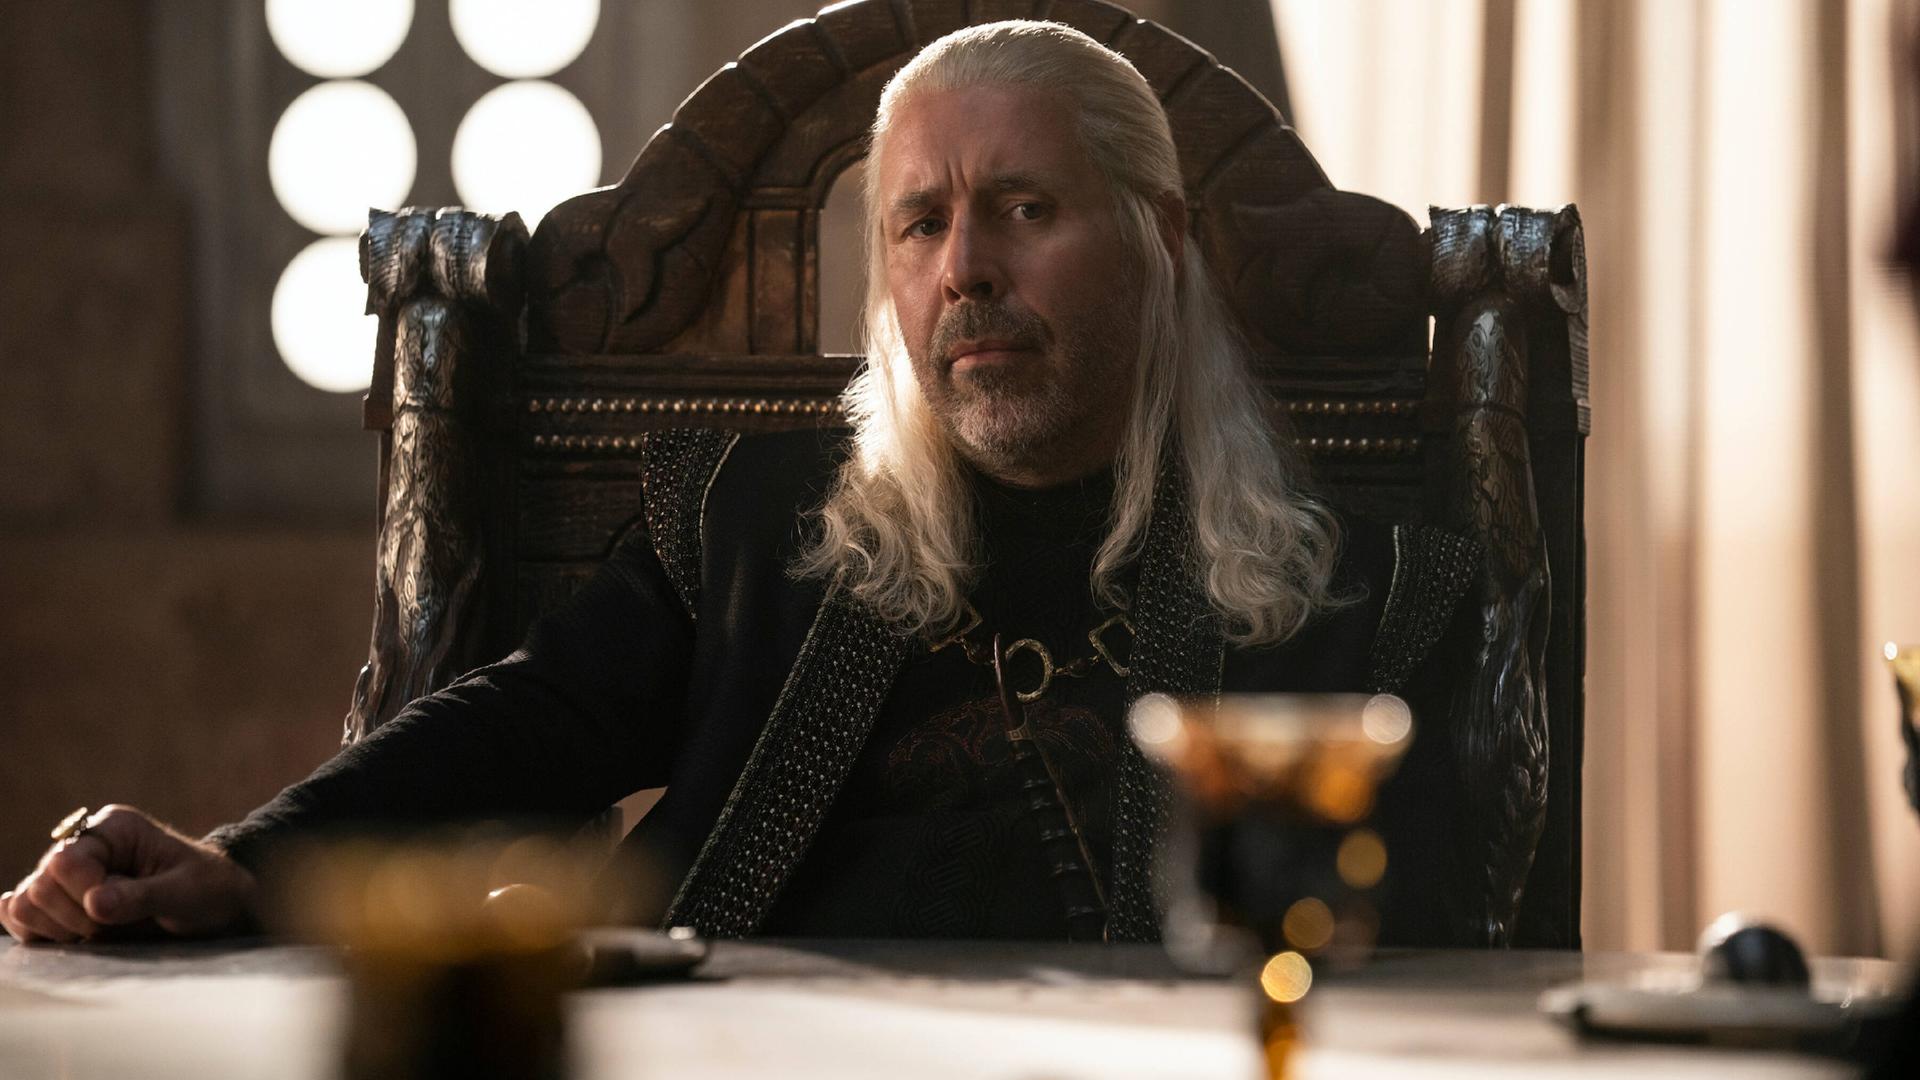 In vollem Ornat: Paddy Considine in seiner Rolle als König Viserys Targaryen in der neuen Serie "House of the Dragon". Er schaut vorsichtig, aber freundlich. Im Vordergrund sind Gläser erkennbar, er sitzt offenbar an einer Tafel. 